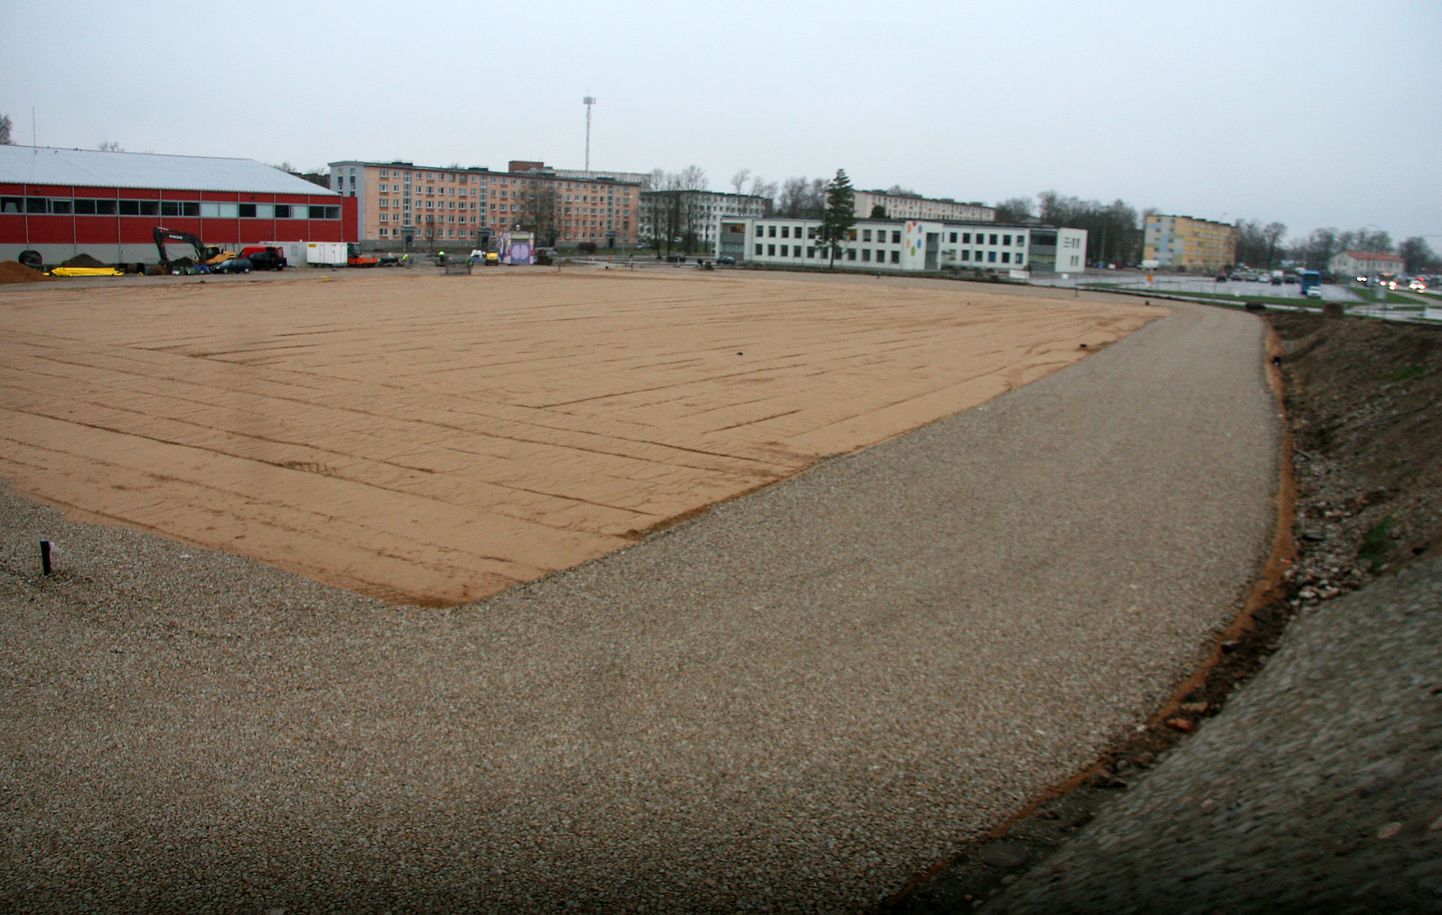 Jõhvi tulevase staadioni jalgpalliväljakul on valminud liivast ja jooksurajal killustikust alus.